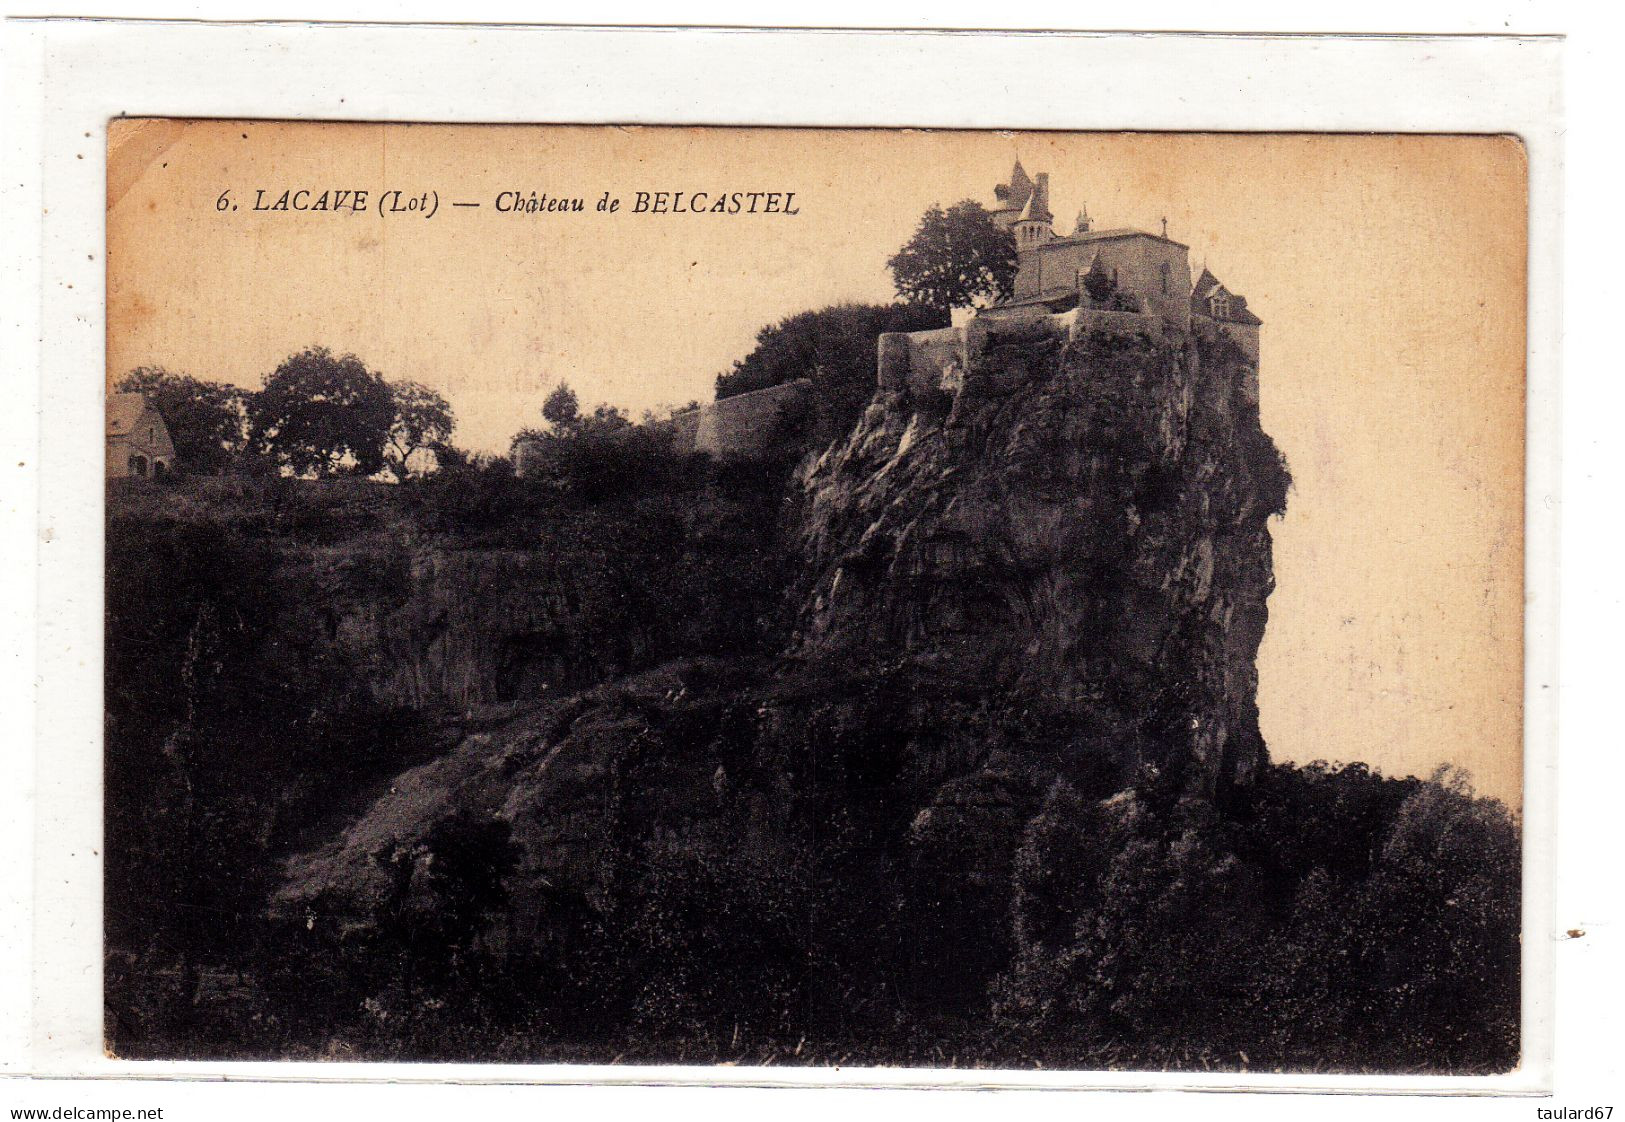 Lacave Chateau De Belcastel - Lacave